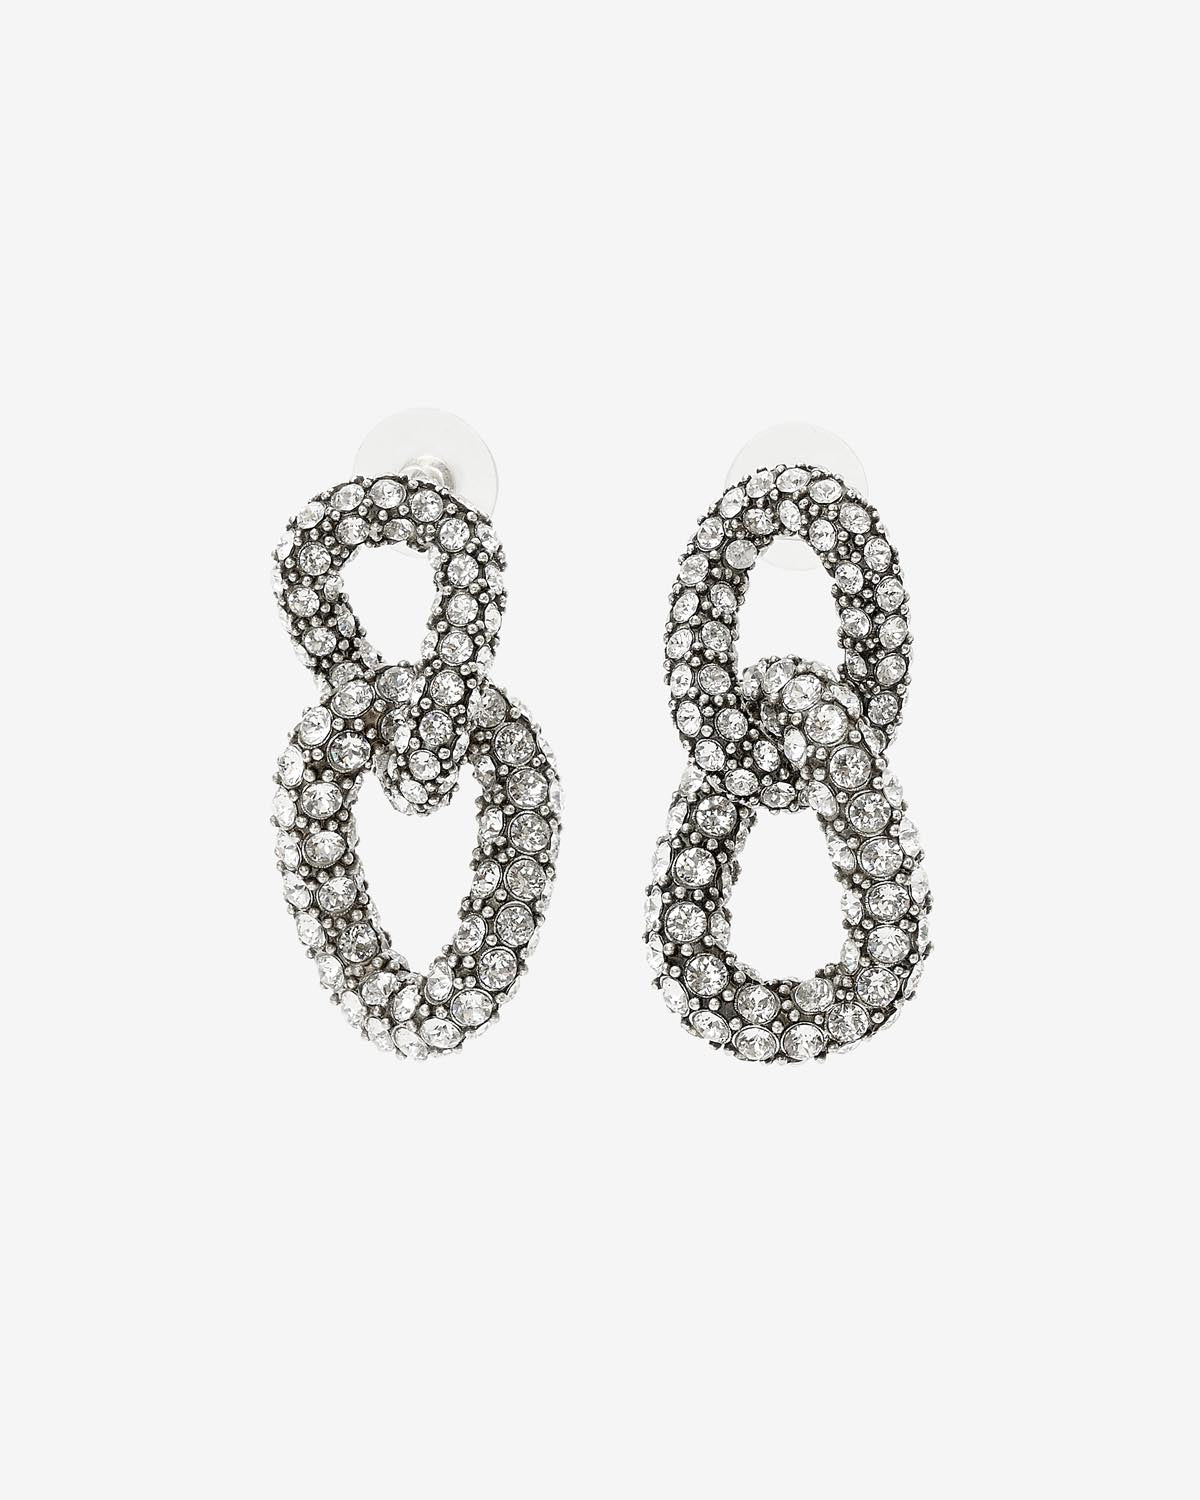 Funky ring earrings Woman Silver 4